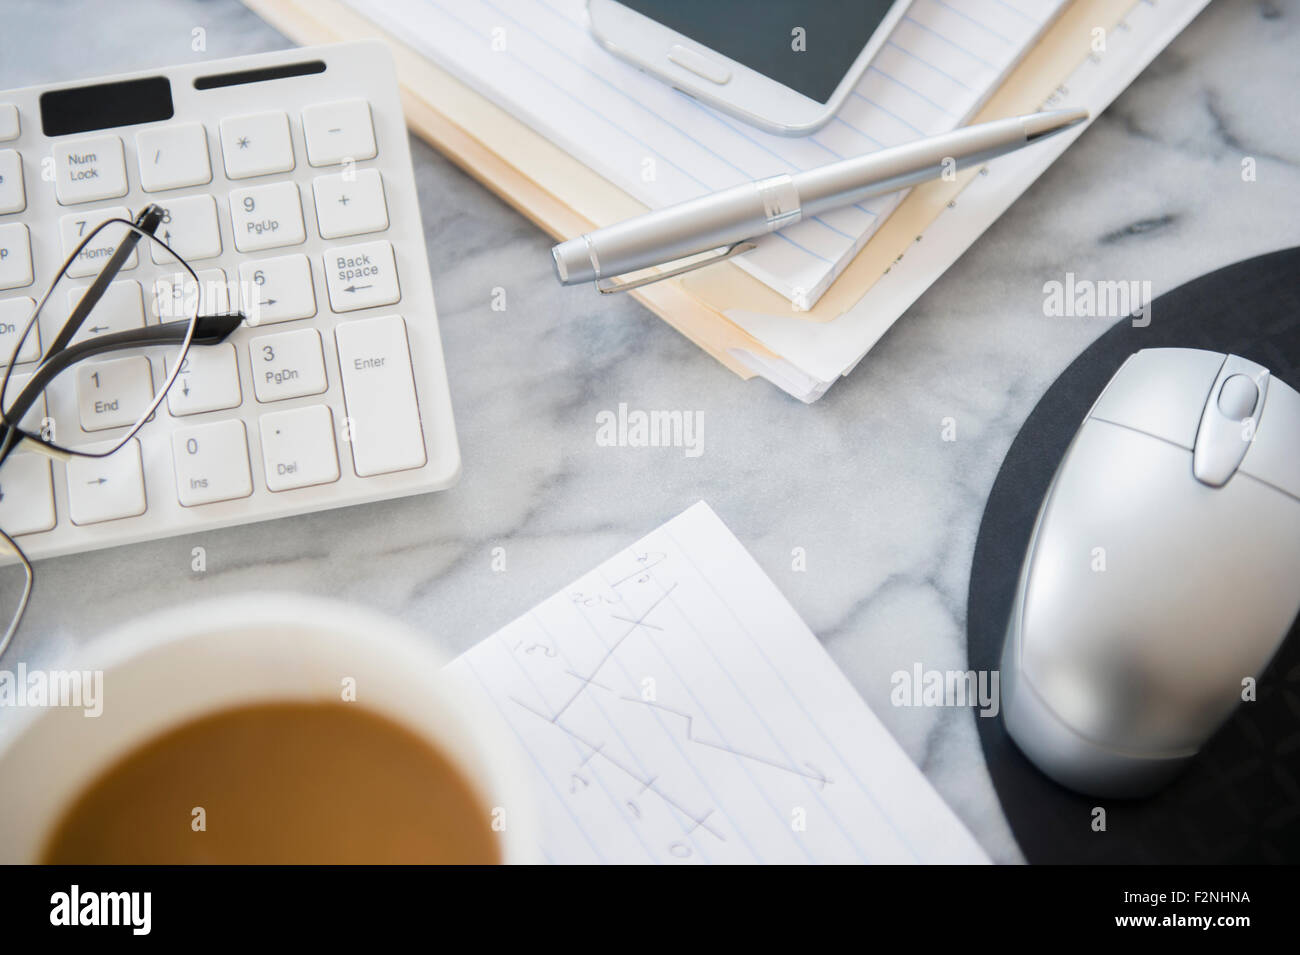 Nahaufnahme von EDV-Anlagen, Dateien und Kaffee am Schreibtisch Stockfoto